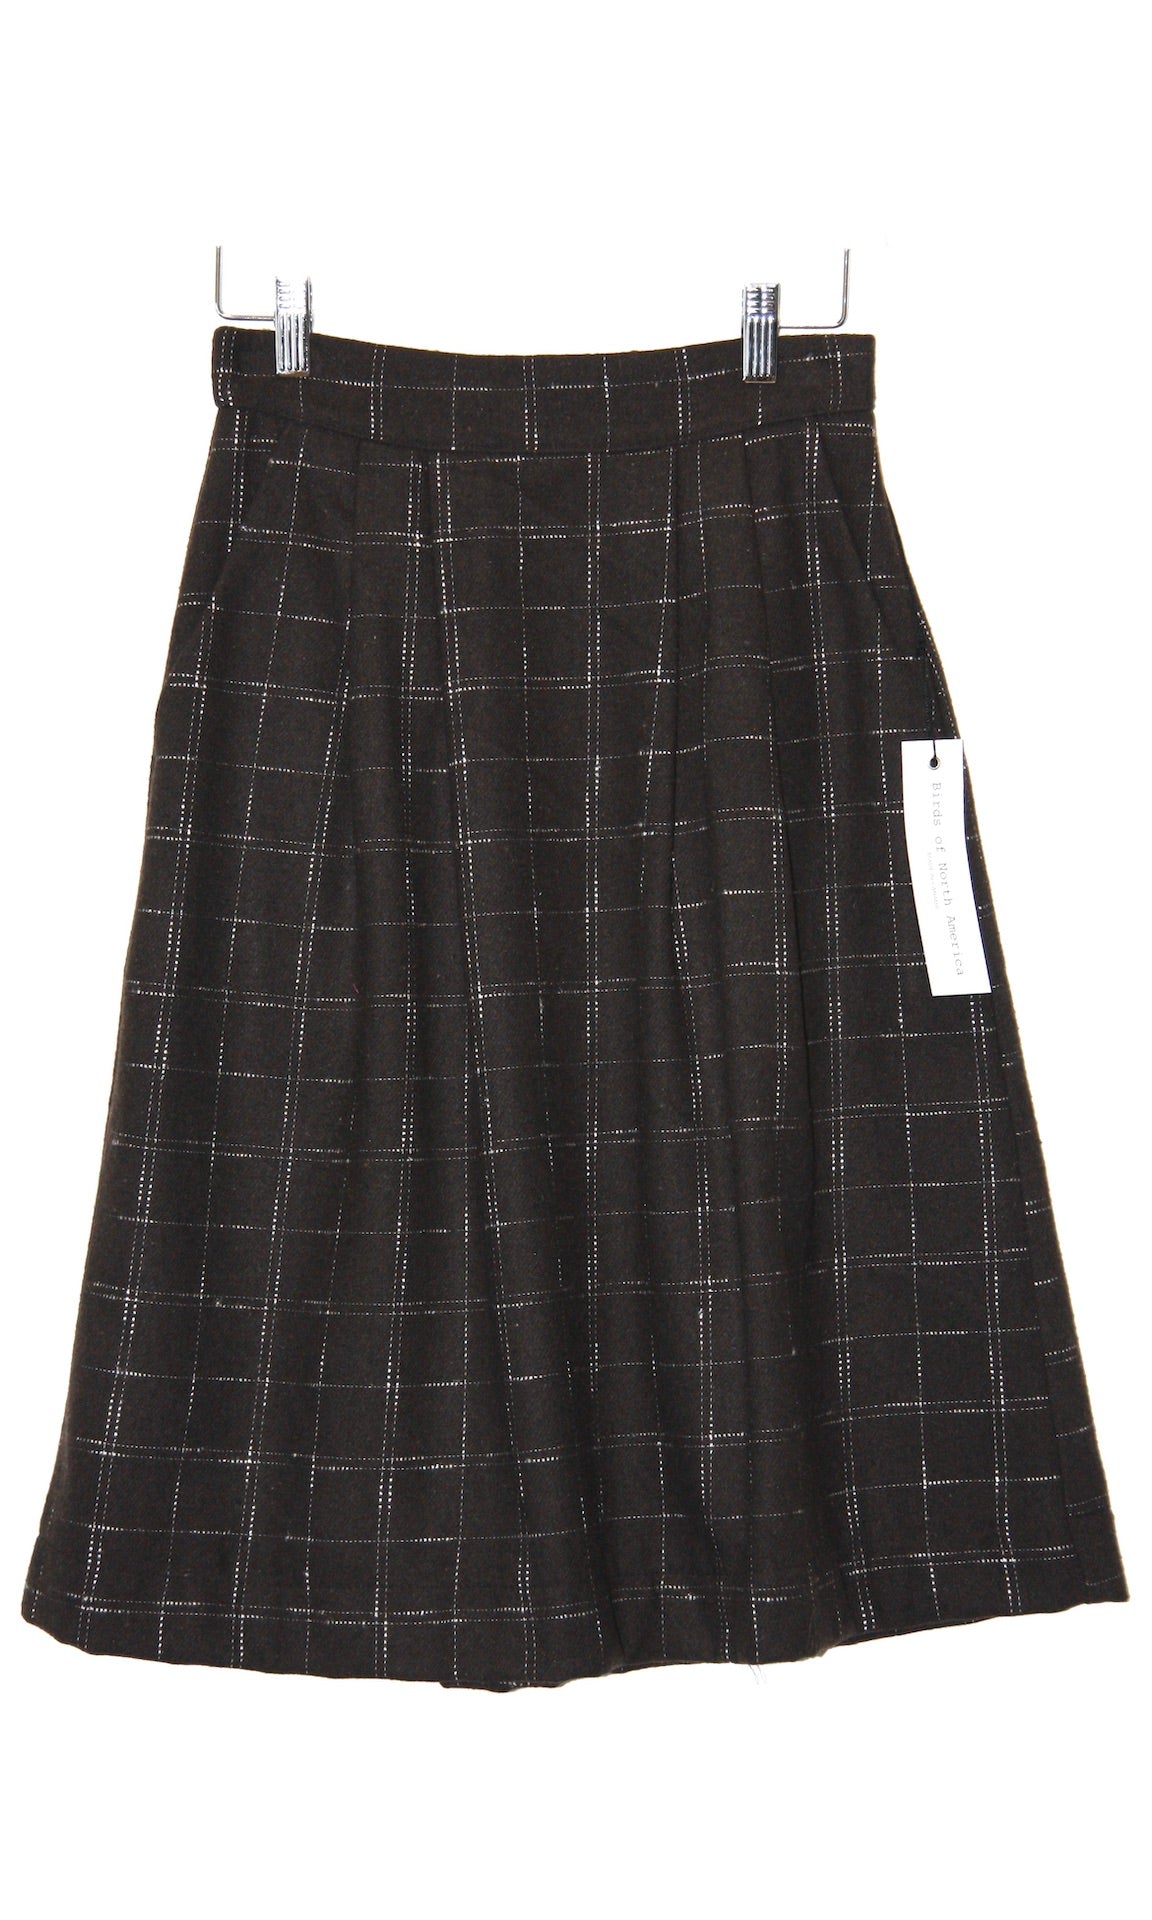 SS80 - 4 - Amazon Skirt - Brown